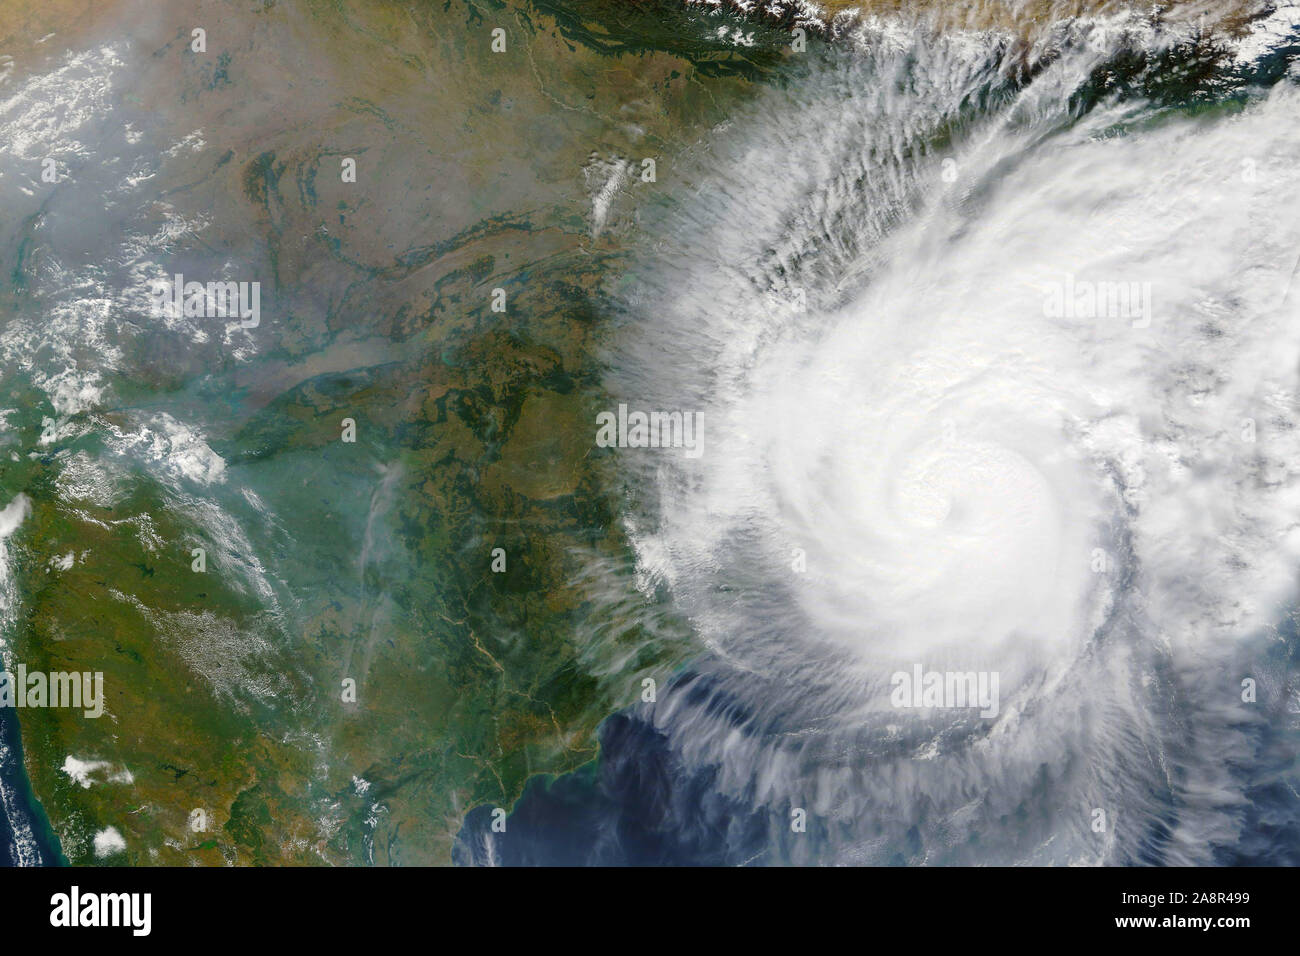 Cyclone Bulbul in Richtung Indien und Bangladesch im November 2019 - Elemente dieses Bild von der NASA eingerichtet Stockfoto